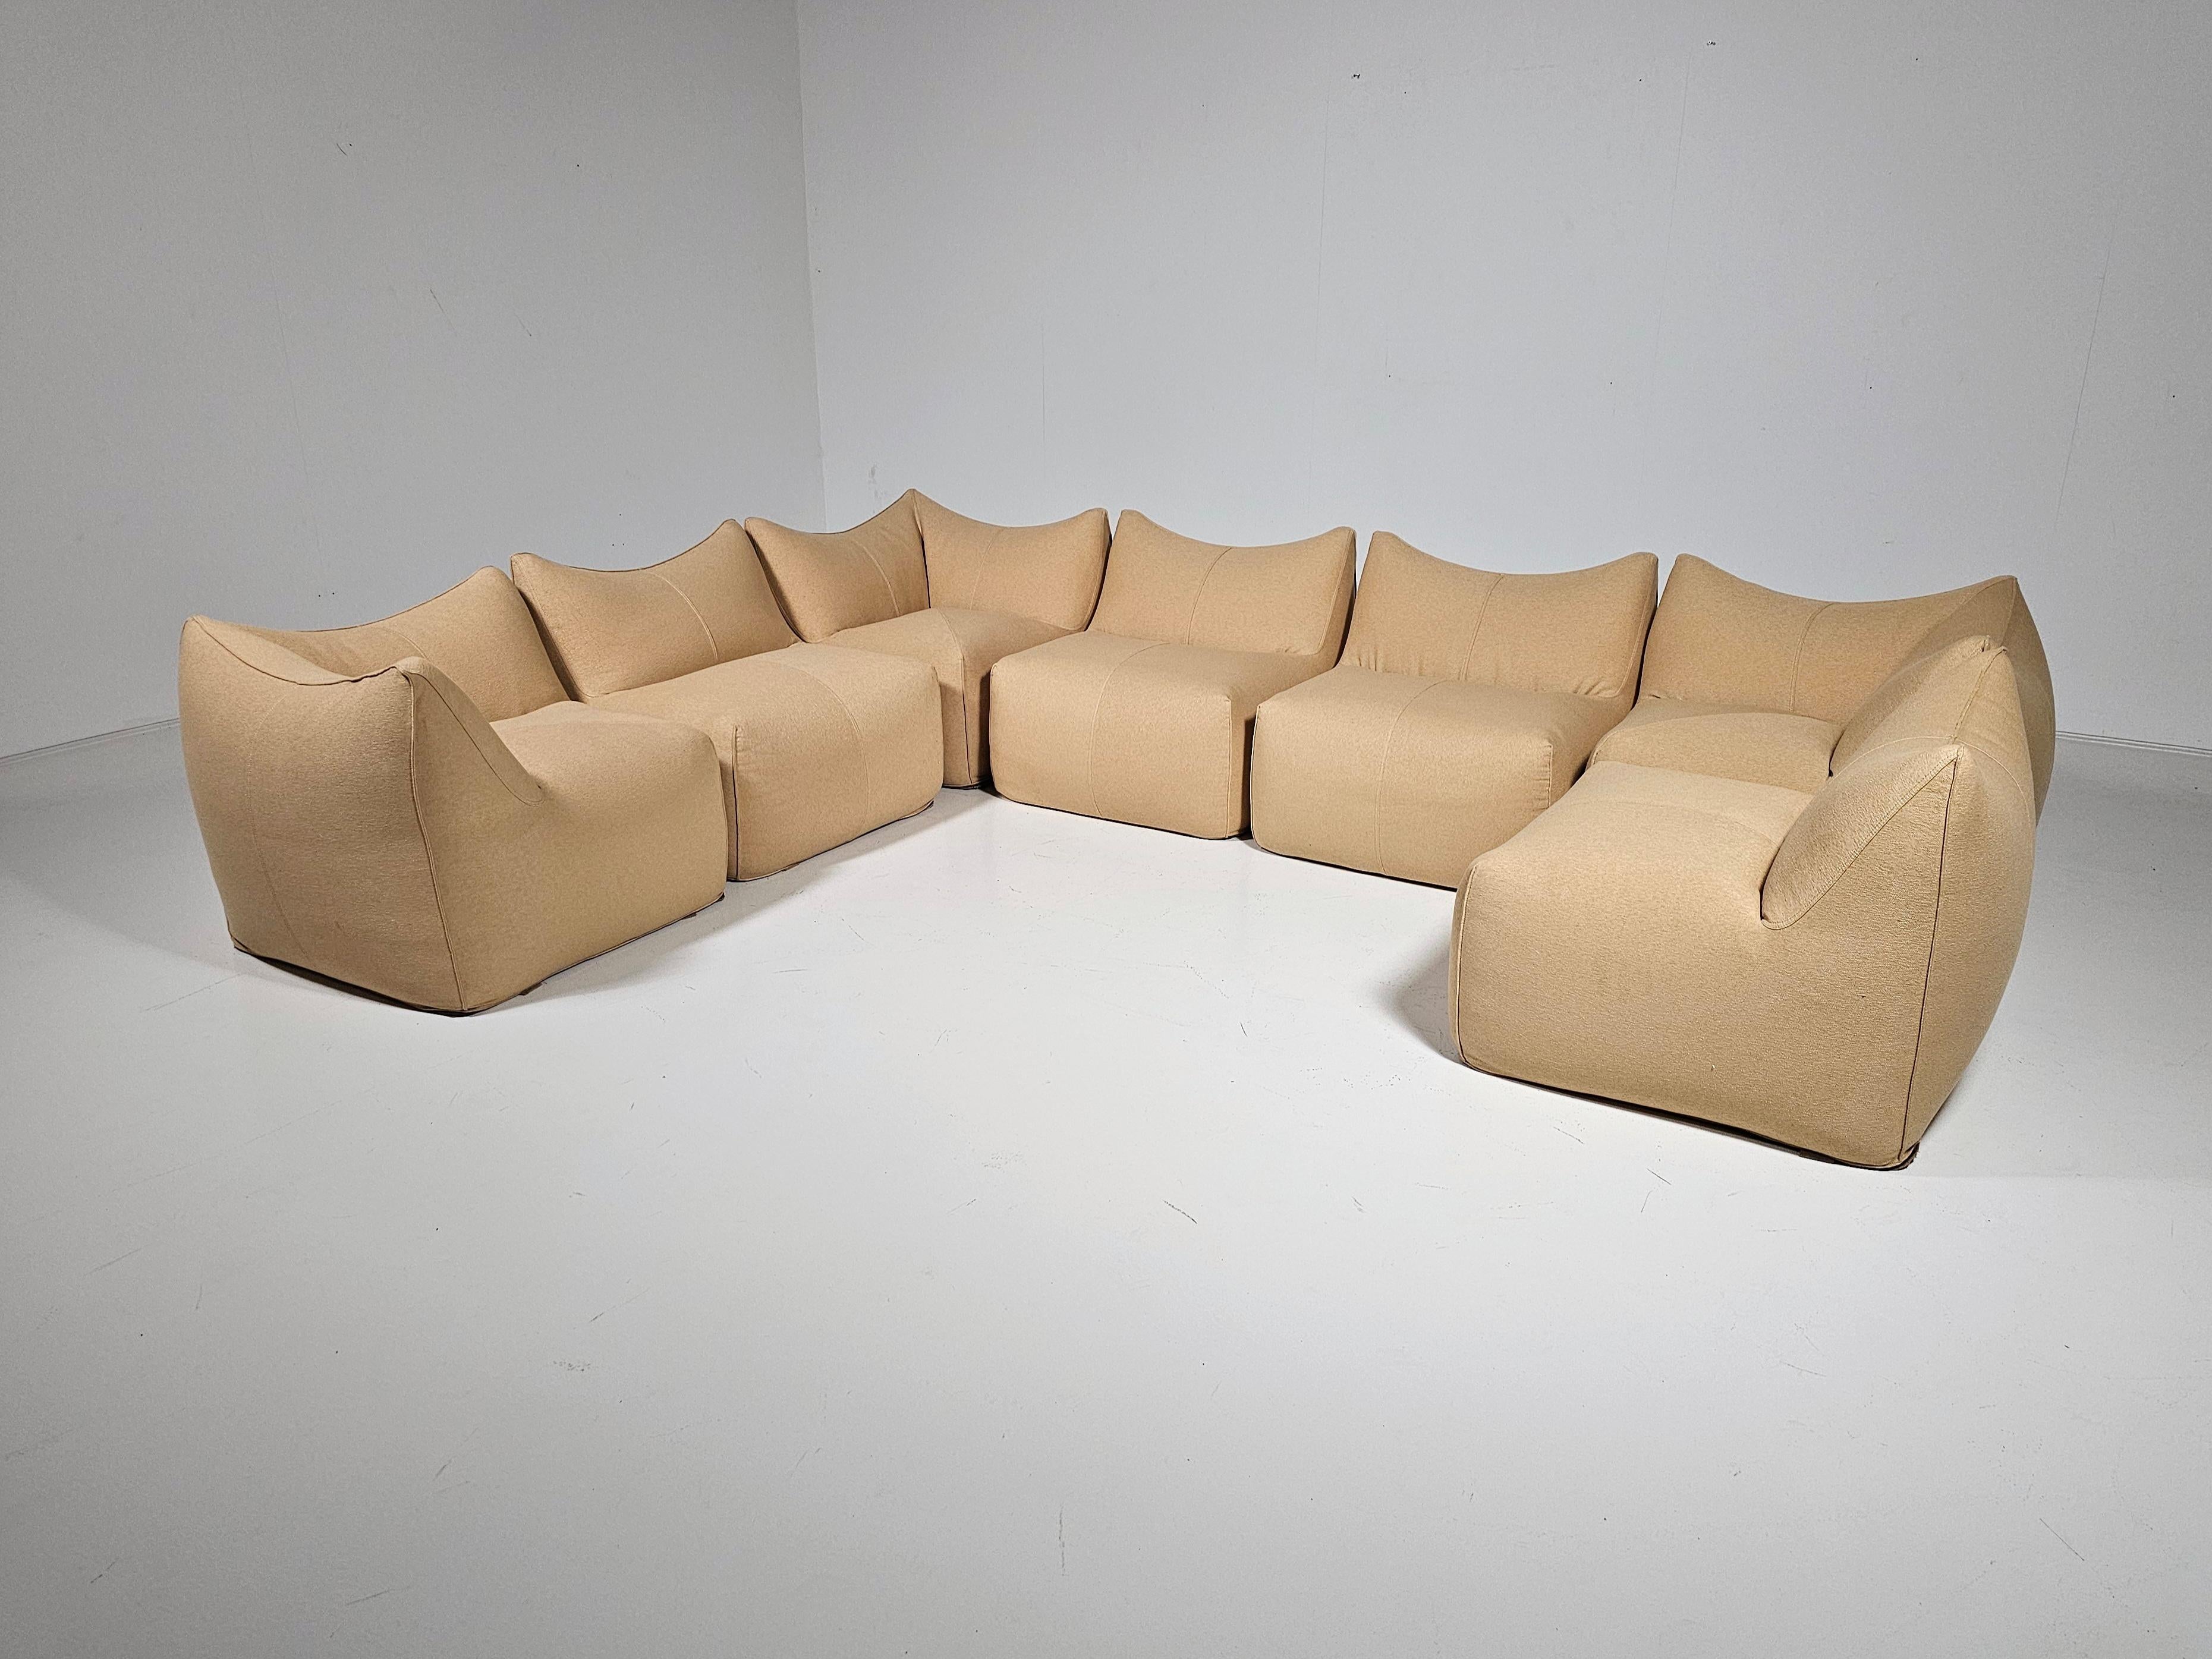 Bouclé Le Bambole sand color Sectional Sofa by Mario Bellni for B&B Italia, 1970s For Sale